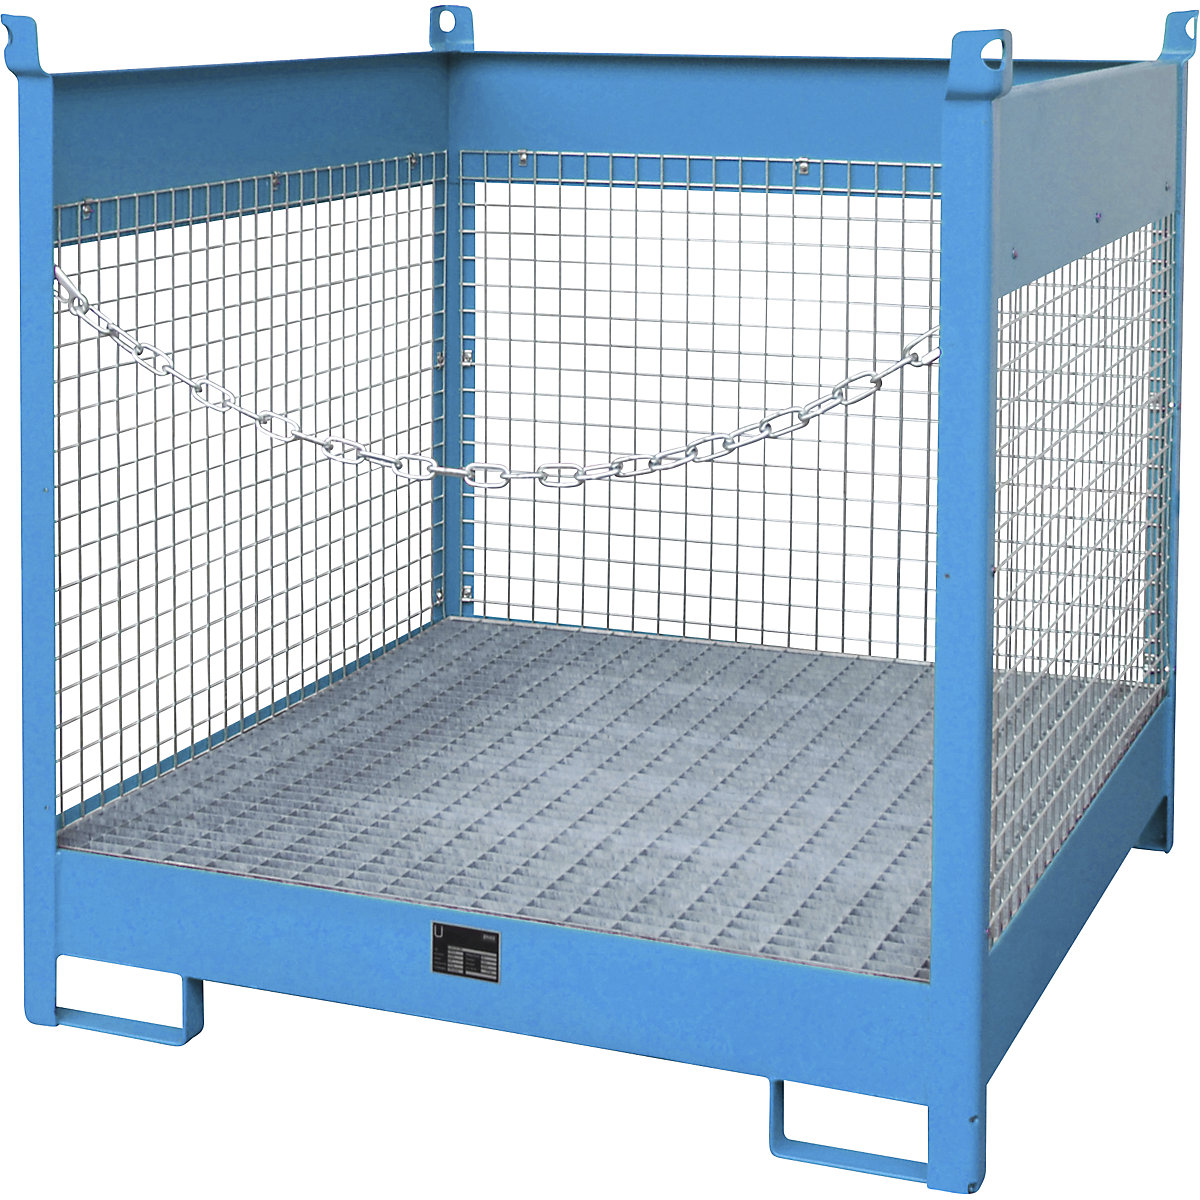 Skladiščna in transportna paleta s prestrezno kadico – eurokraft pro, 3 mrežaste stranice, za 4 sode prostornine 200 l, modre barve-9